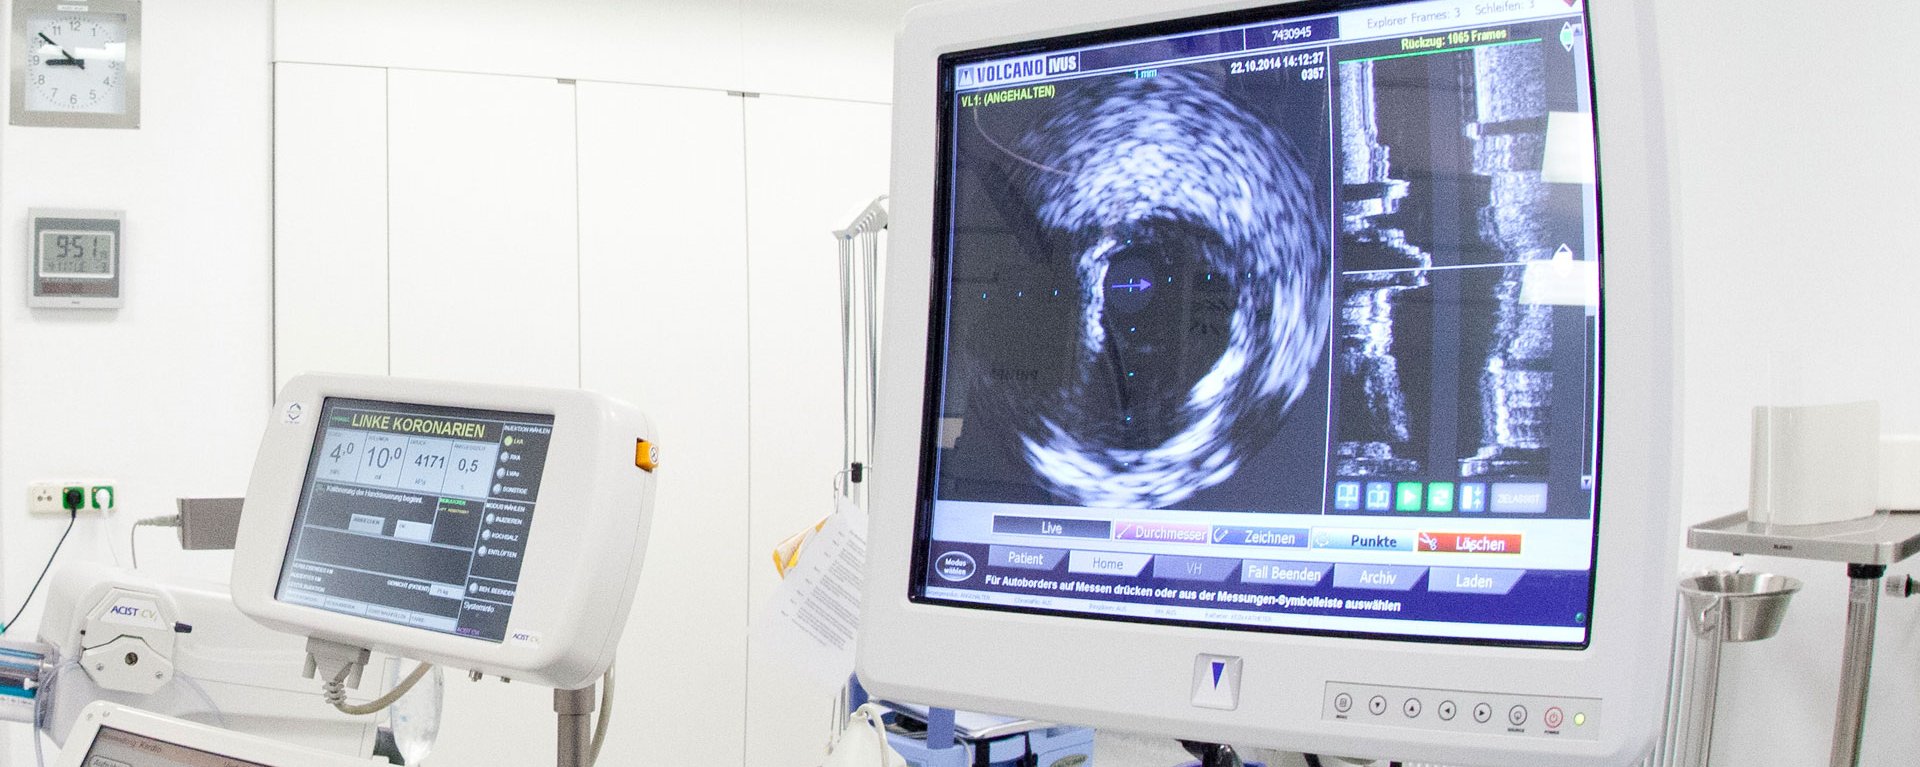 Elektrophysiologie ist ein bildgebendes Verfahren – im Bild ist ein Monitor innerhalb eines Operationssaals zu sehen, der solche Bilder ausgeben kann